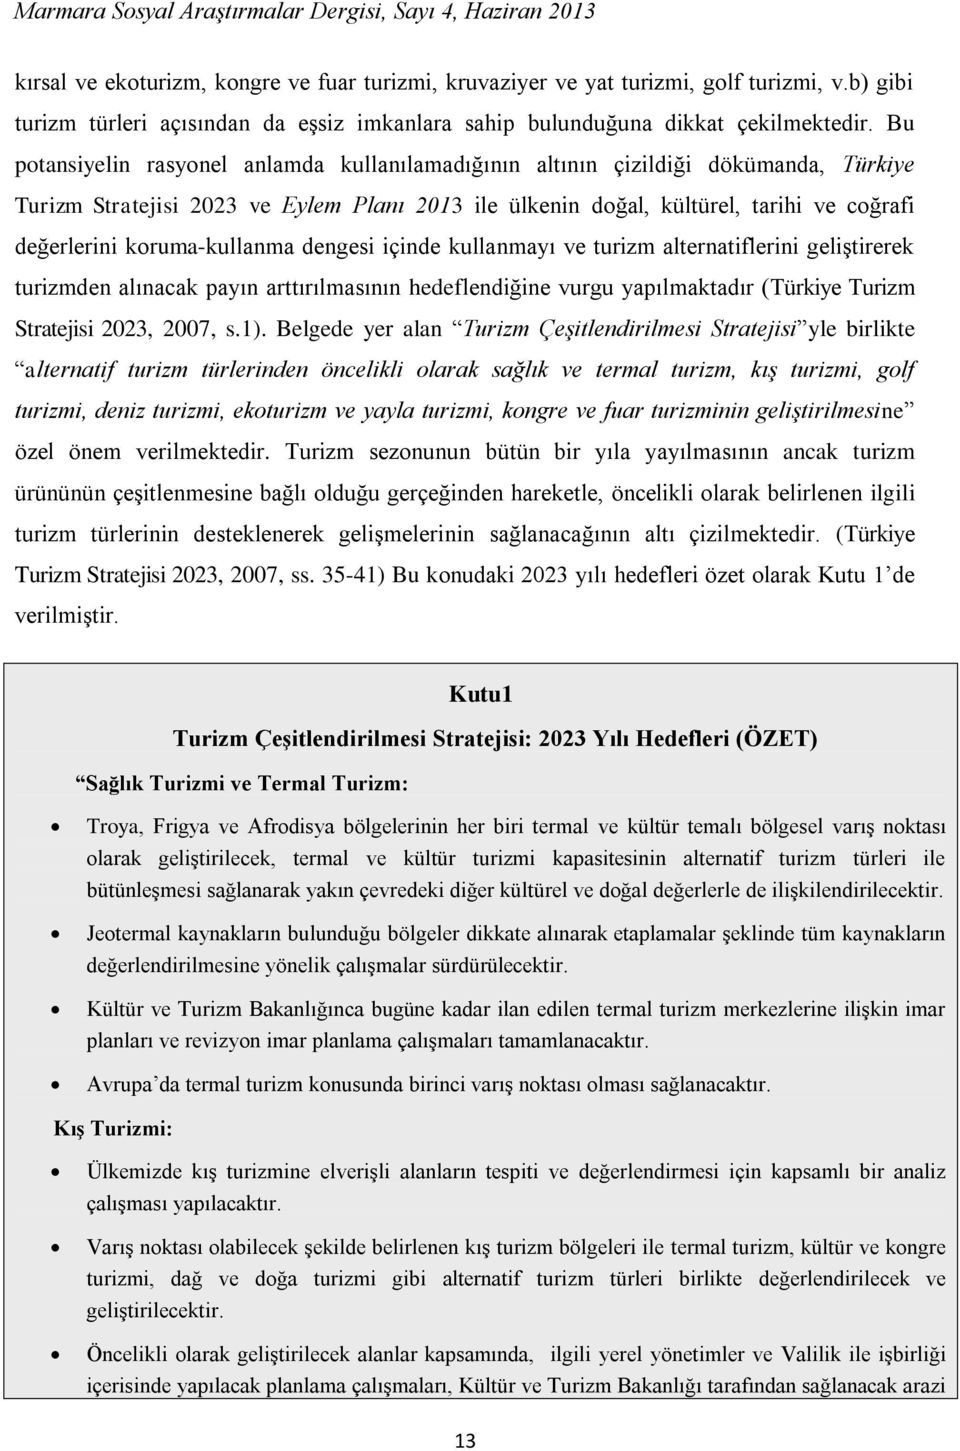 koruma-kullanma dengesi içinde kullanmayı ve turizm alternatiflerini geliştirerek turizmden alınacak payın arttırılmasının hedeflendiğine vurgu yapılmaktadır (Türkiye Turizm Stratejisi 2023, 2007, s.